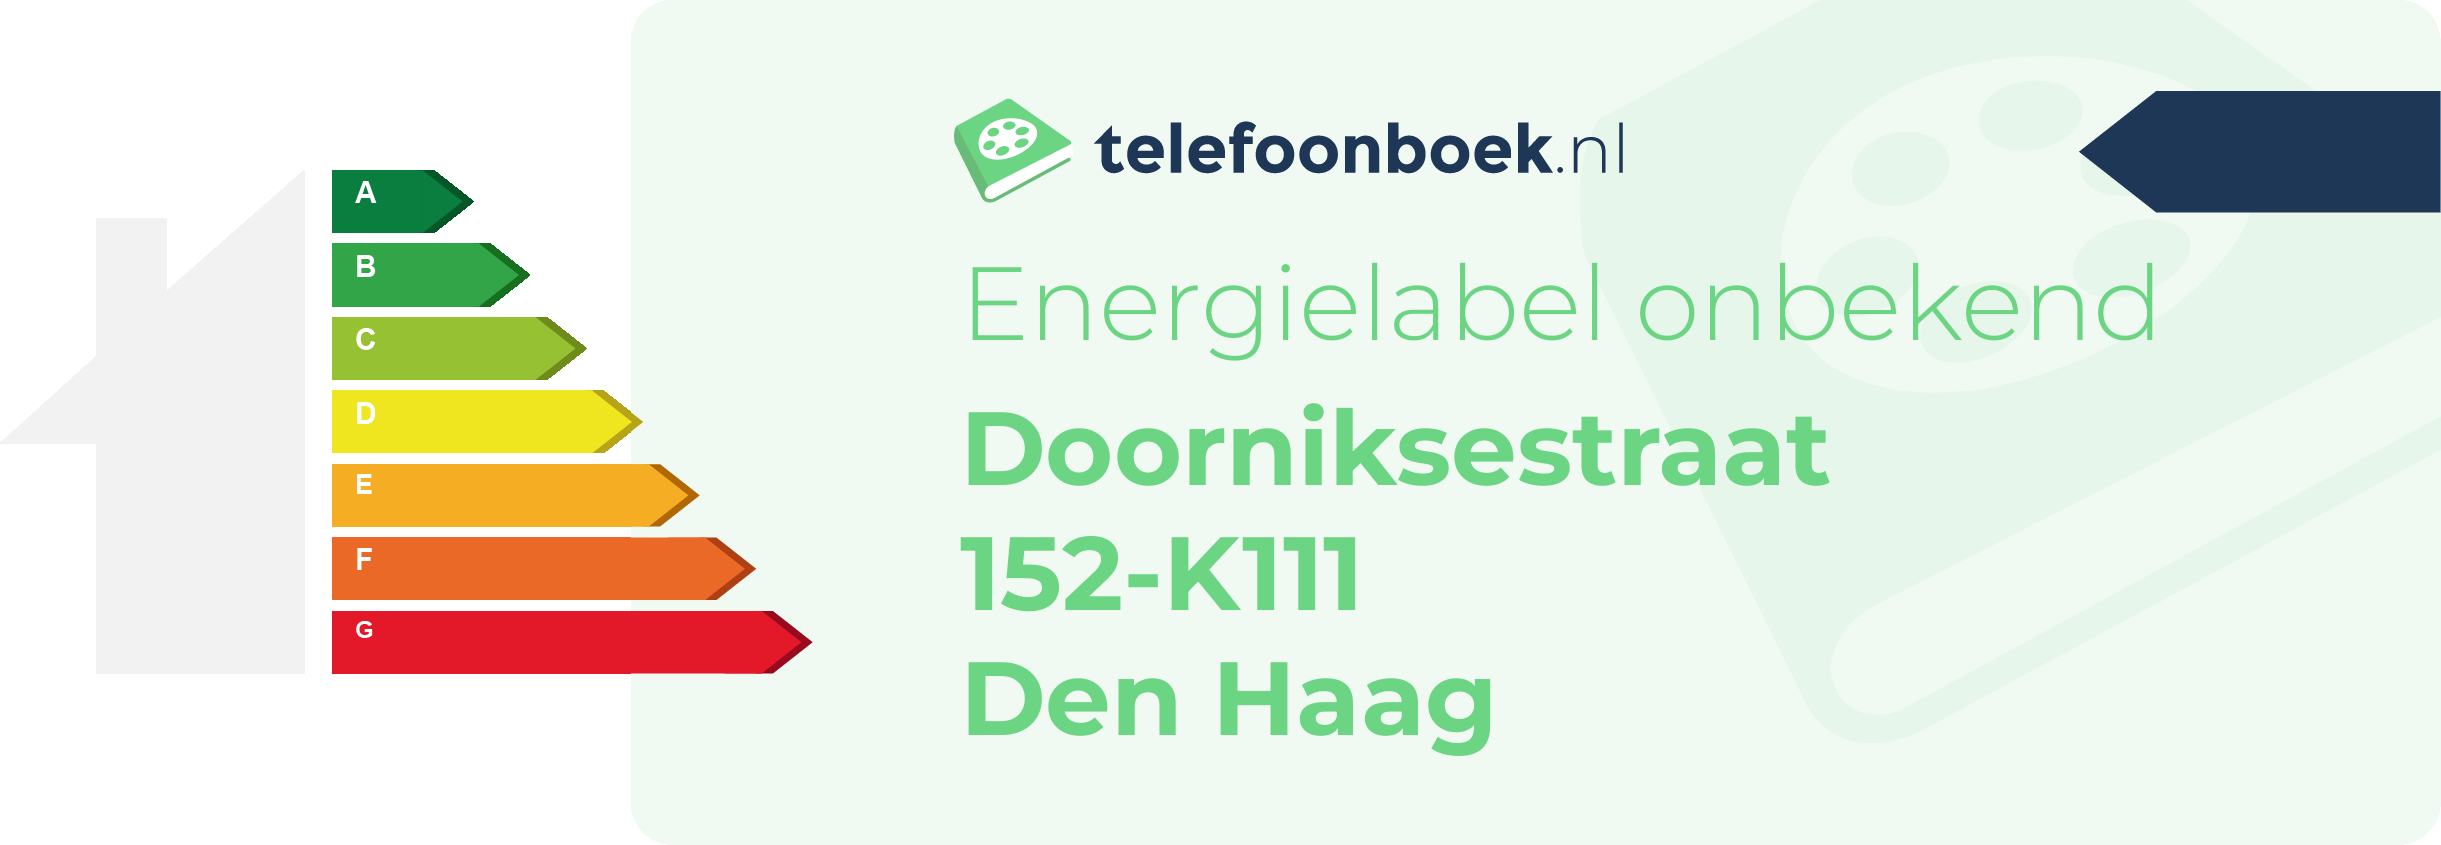 Energielabel Doorniksestraat 152-K111 Den Haag